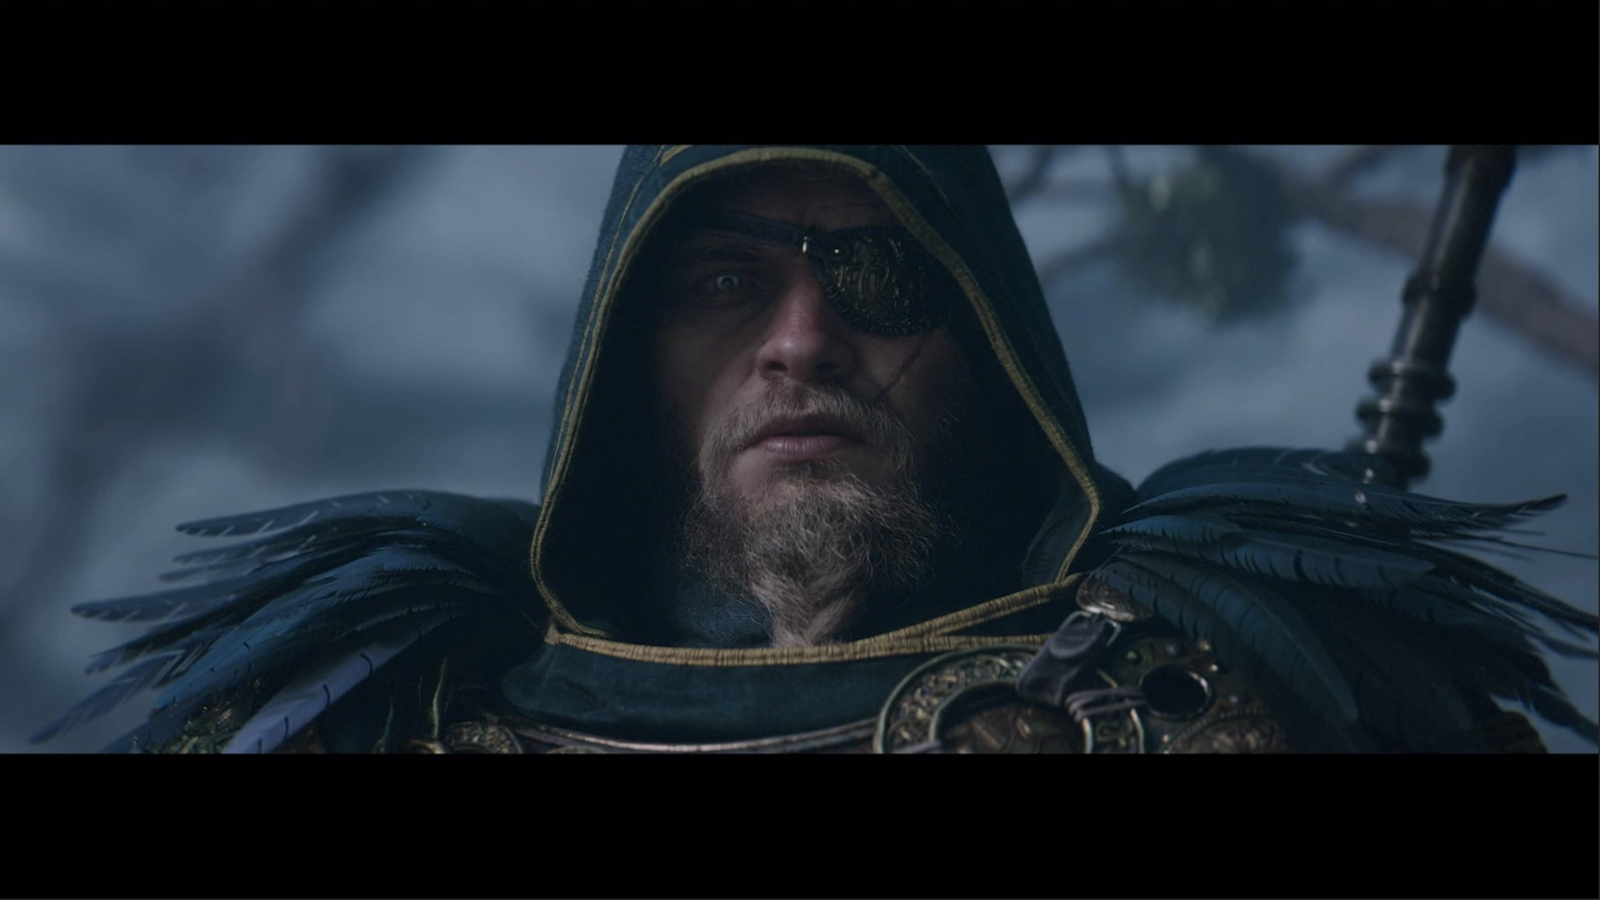 Assassin's Creed® Valhalla: Dawn of Ragnarök